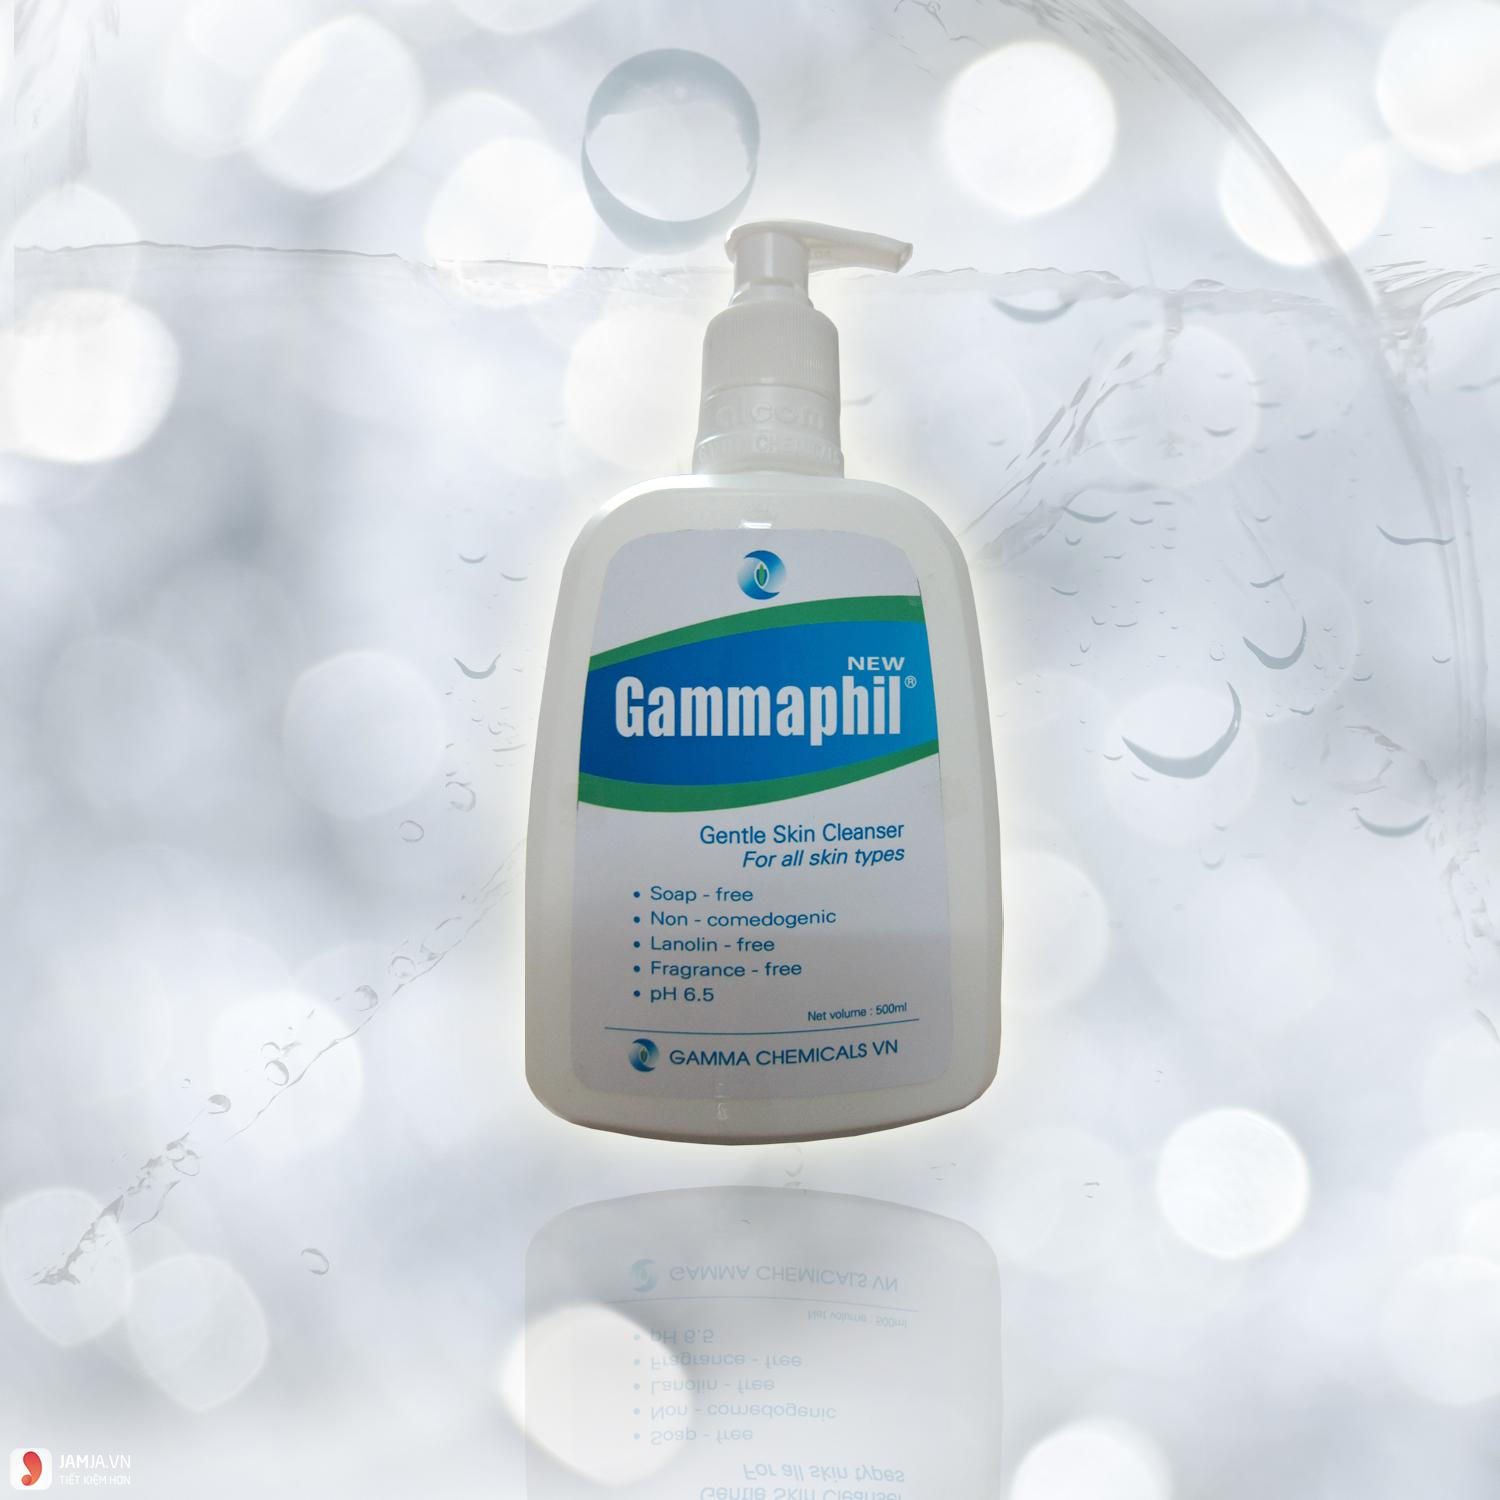 Sữa rửa mặt Gammaphil có nhiều công dụng tốt với làn da